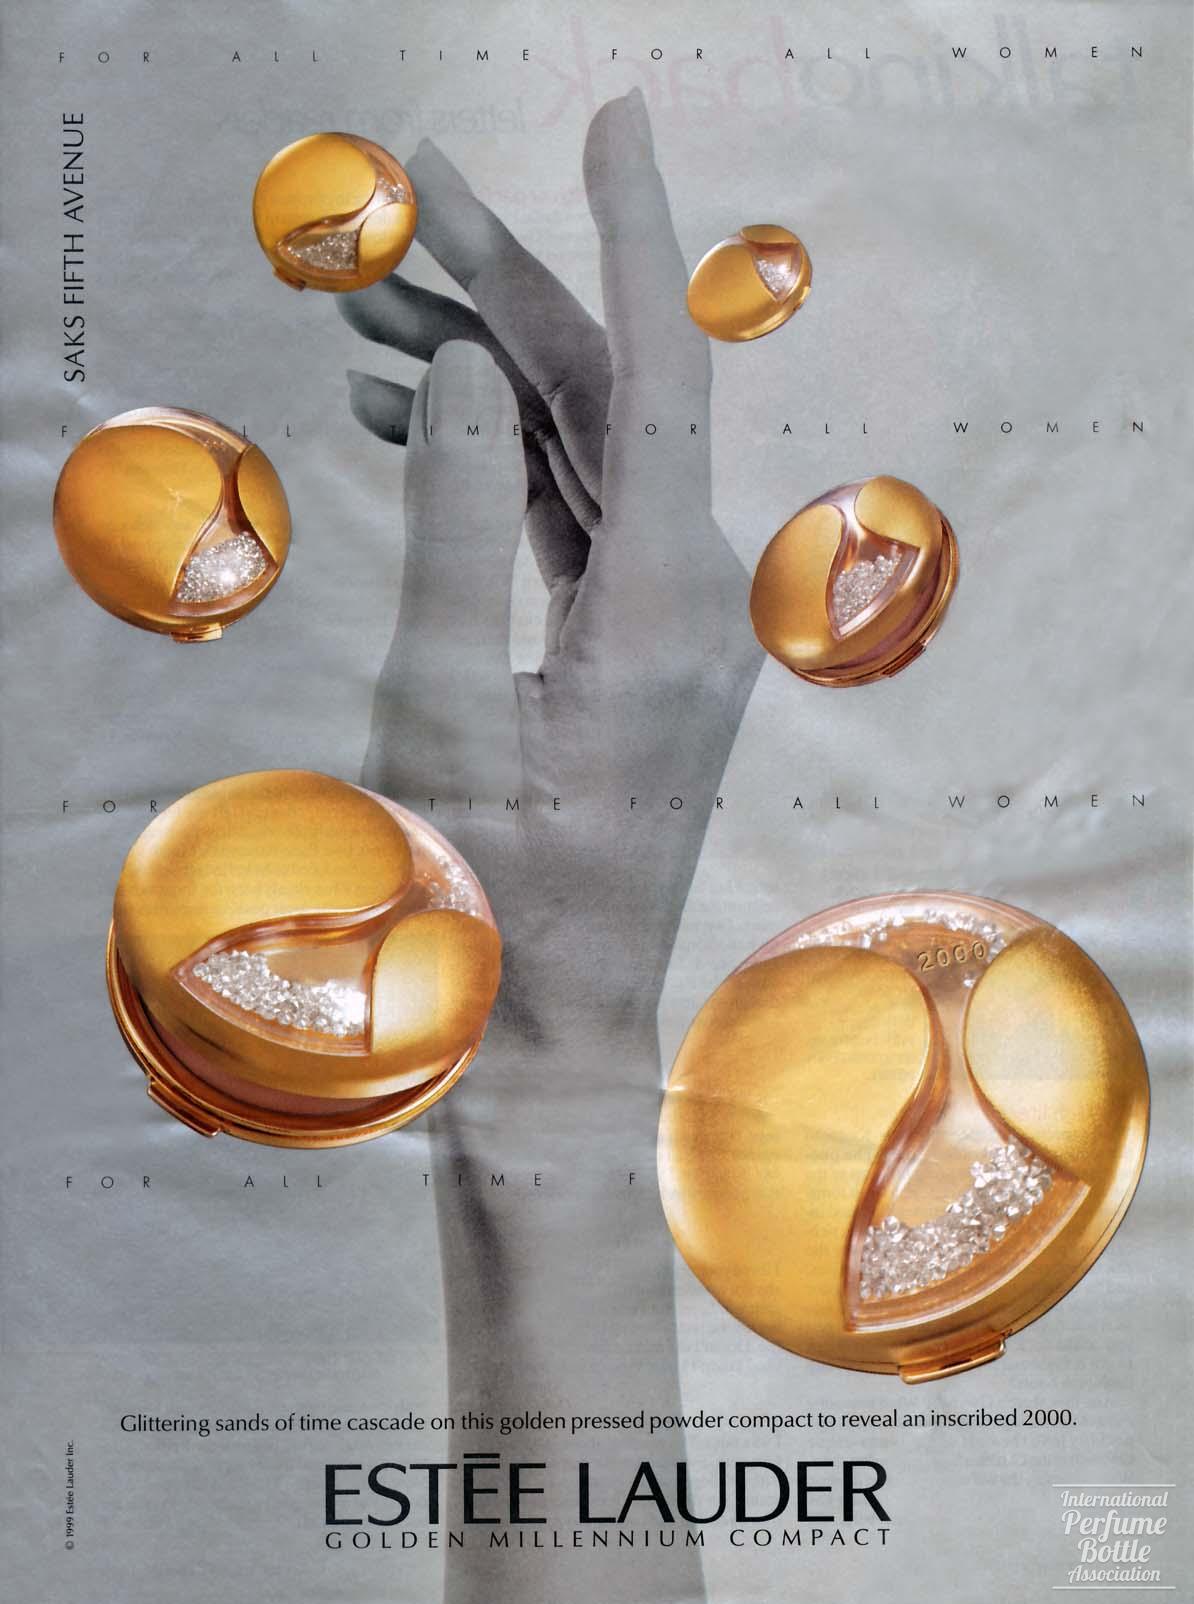 Golden Millennium Compact by Estée Lauder Advertisement - 1999